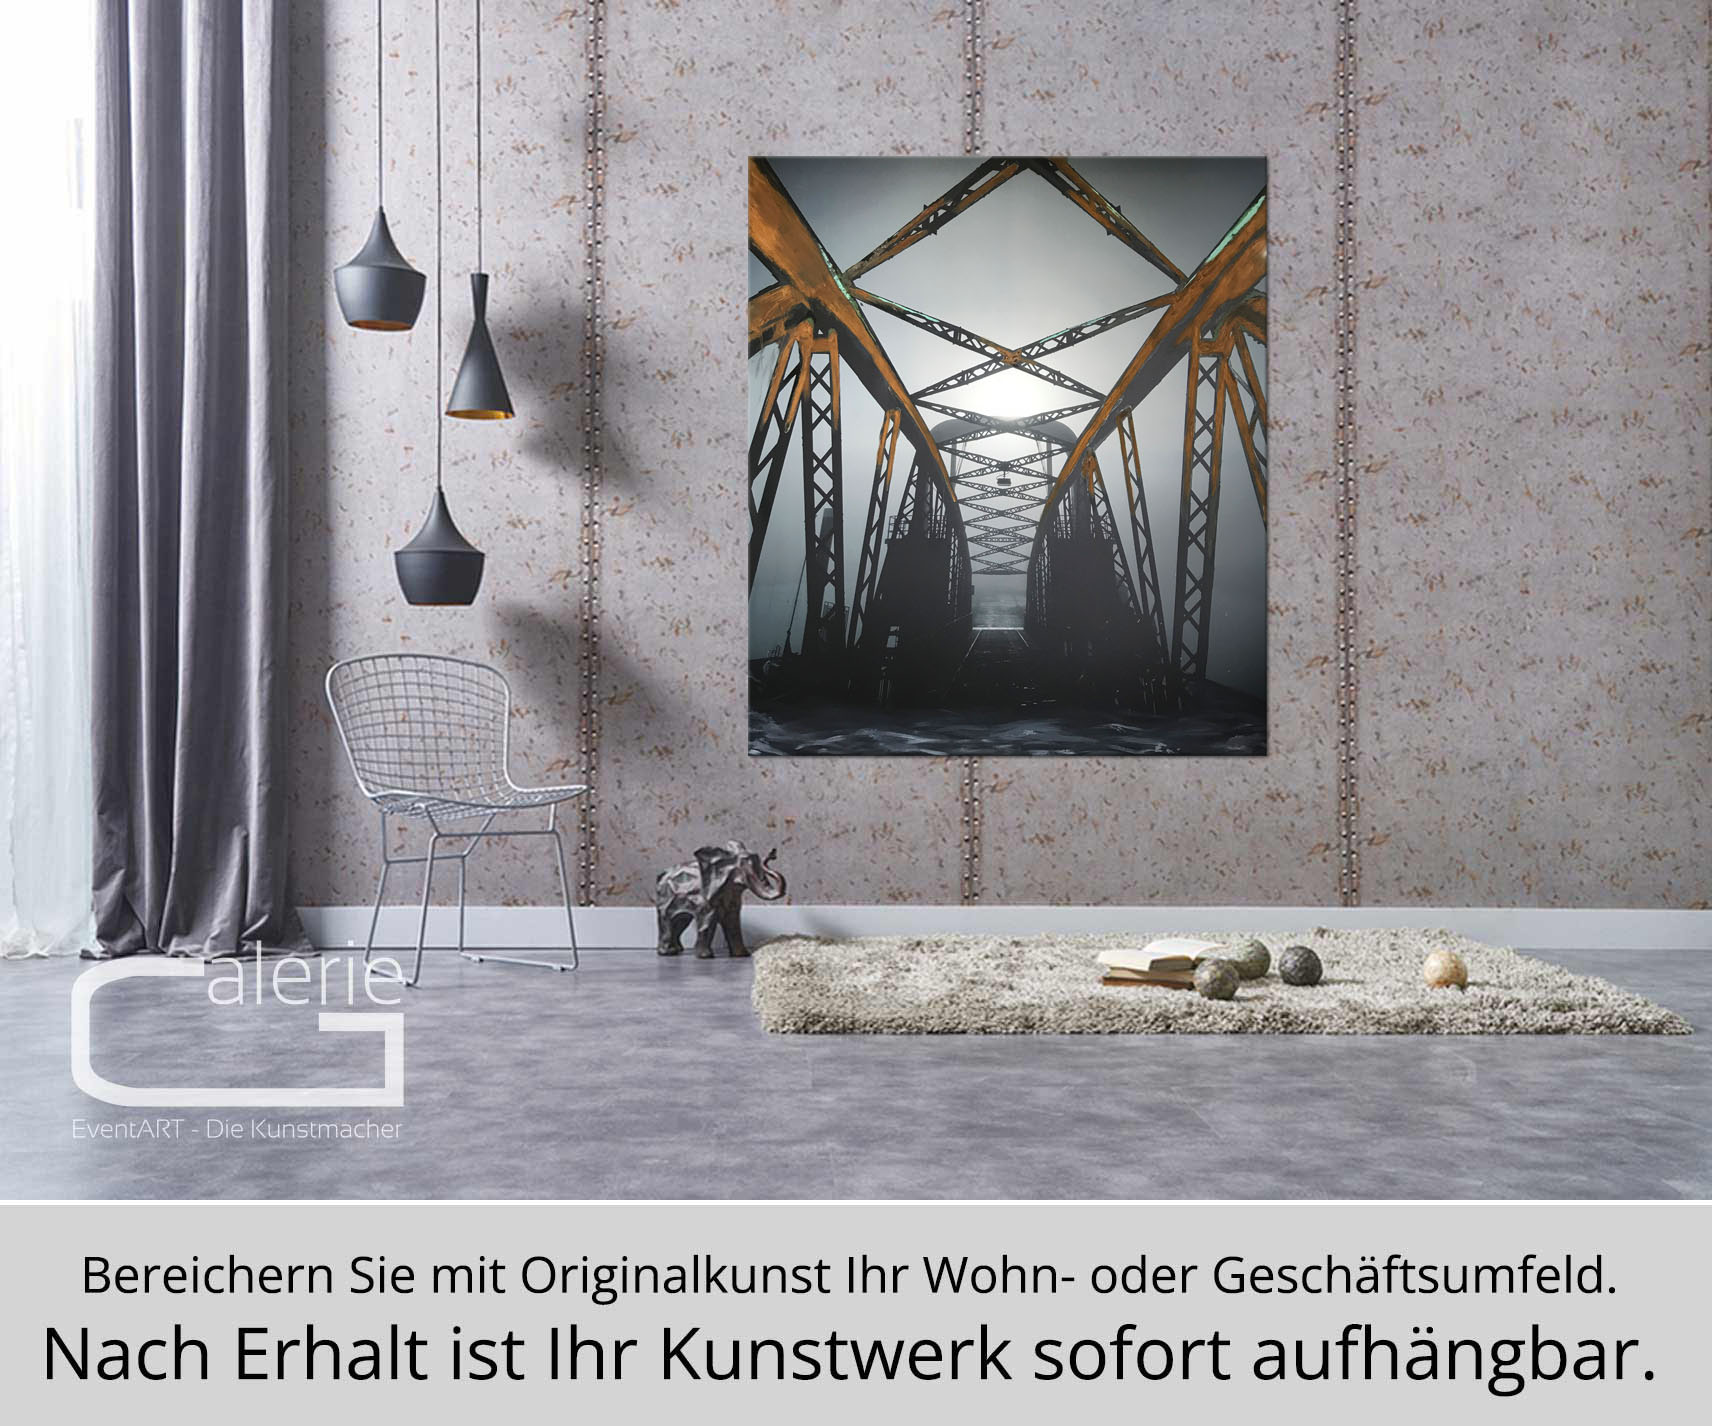 H. Mühlbauer-Gardemin: "Brücke", Moderne Pop Art, Original/serielles Unikat